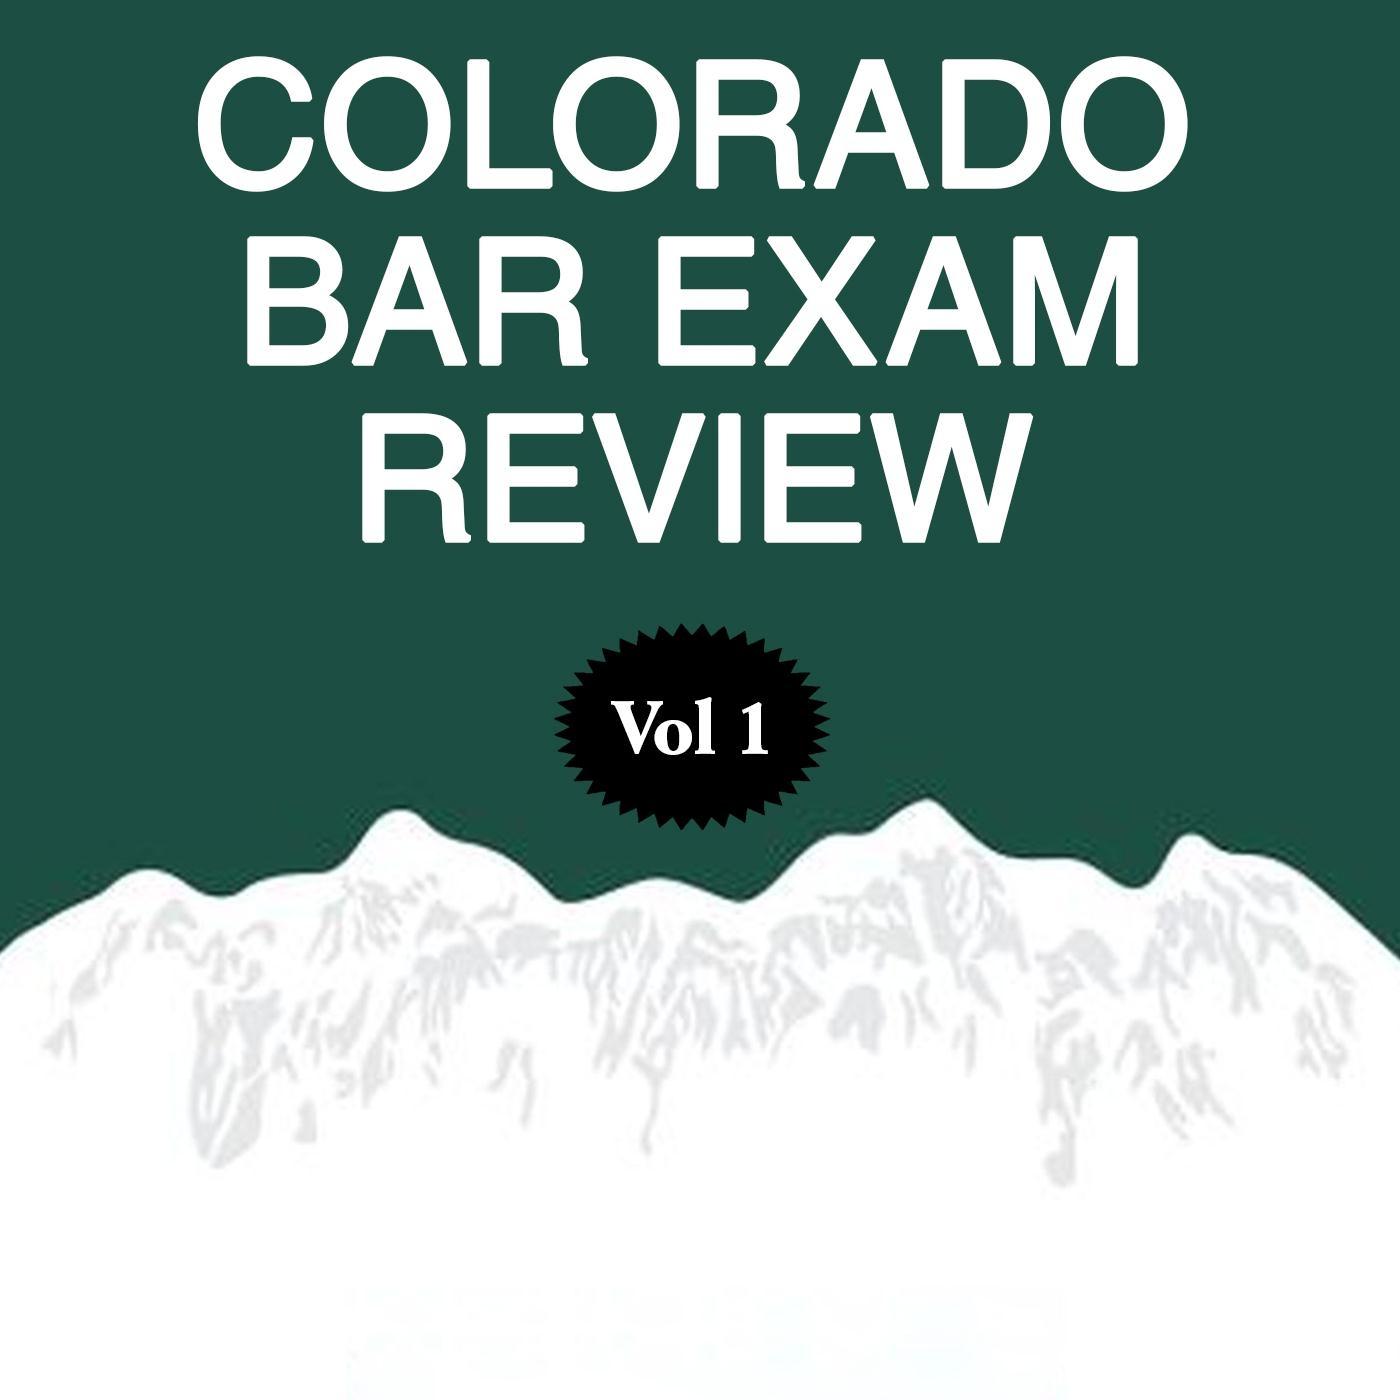 Rob Smith - Colorado Bar Exam Review, Pt. 16: Answer Explanations